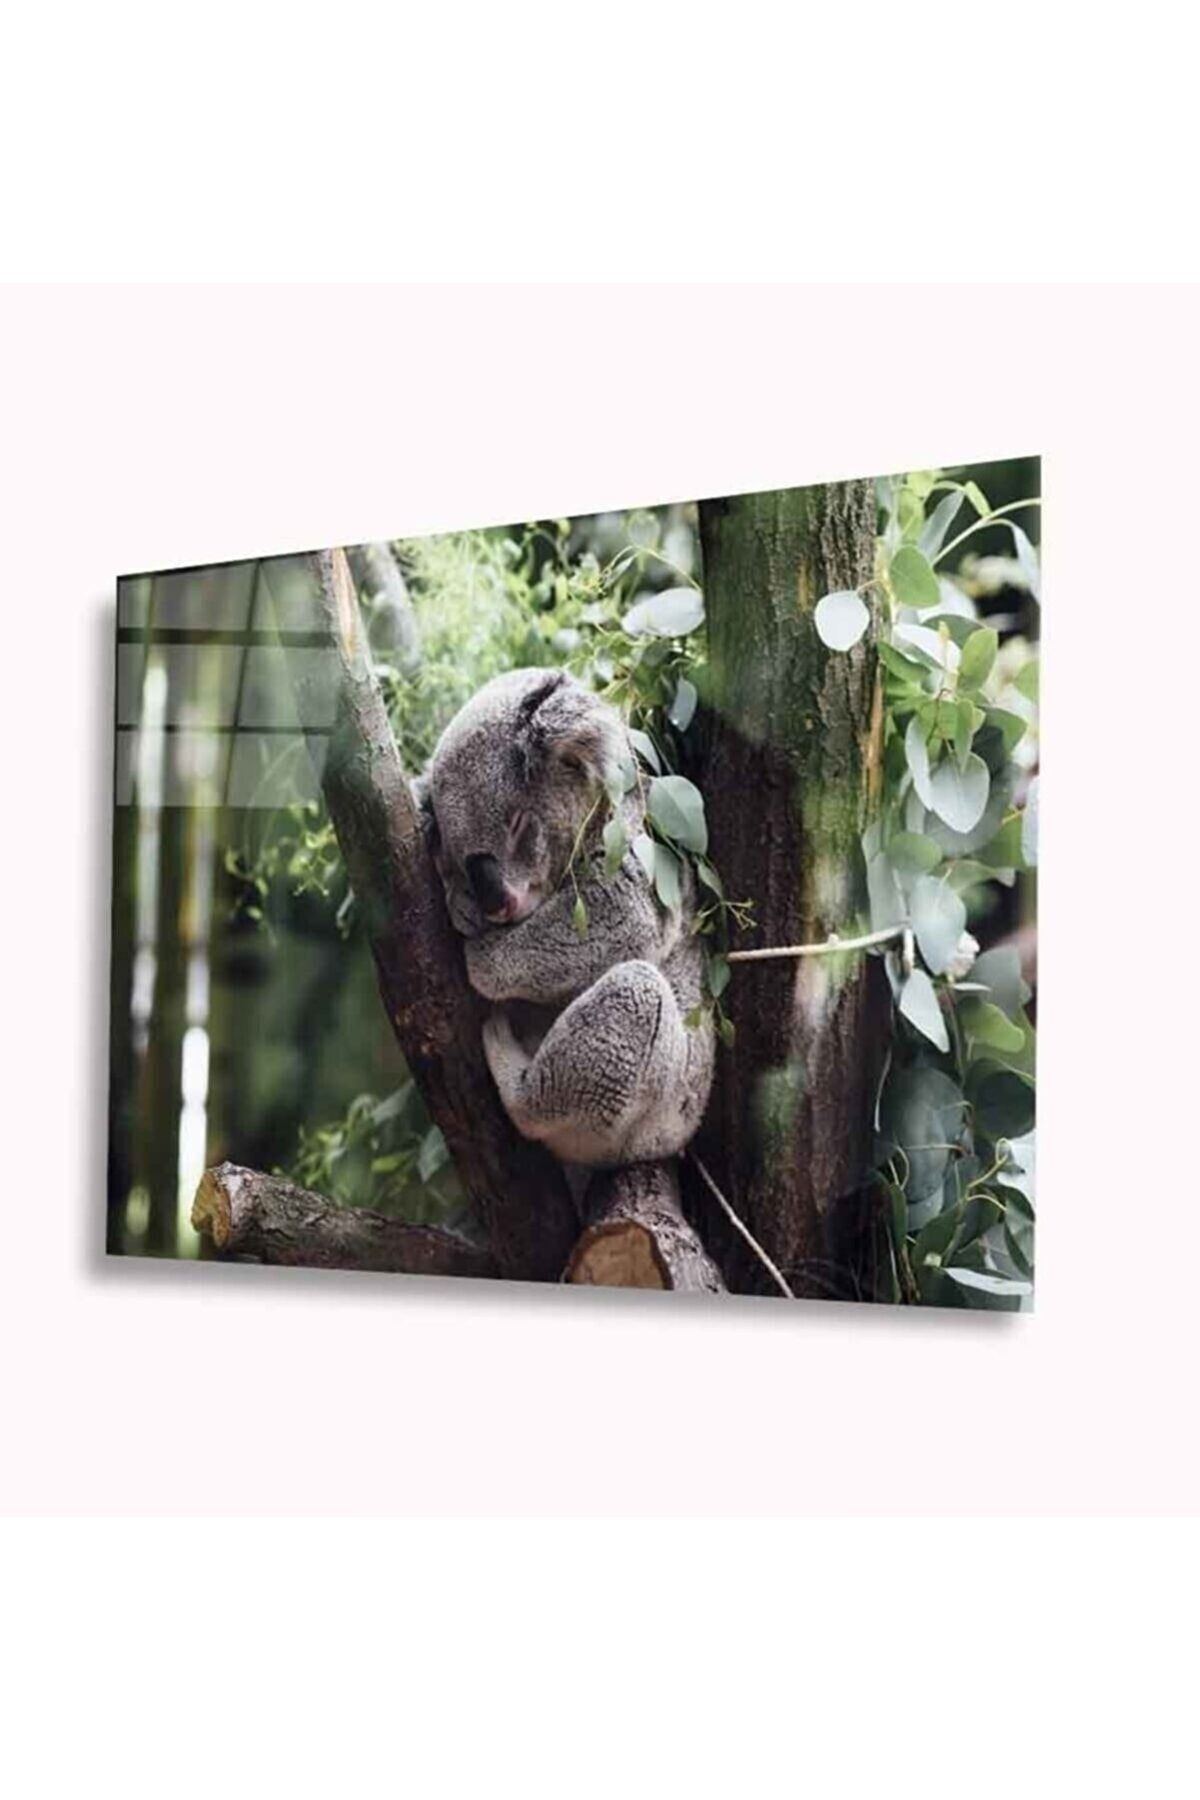 Genel Markalar Koala Cam Tablo 4mm Dayanıklı Temperli Cam A+kalite